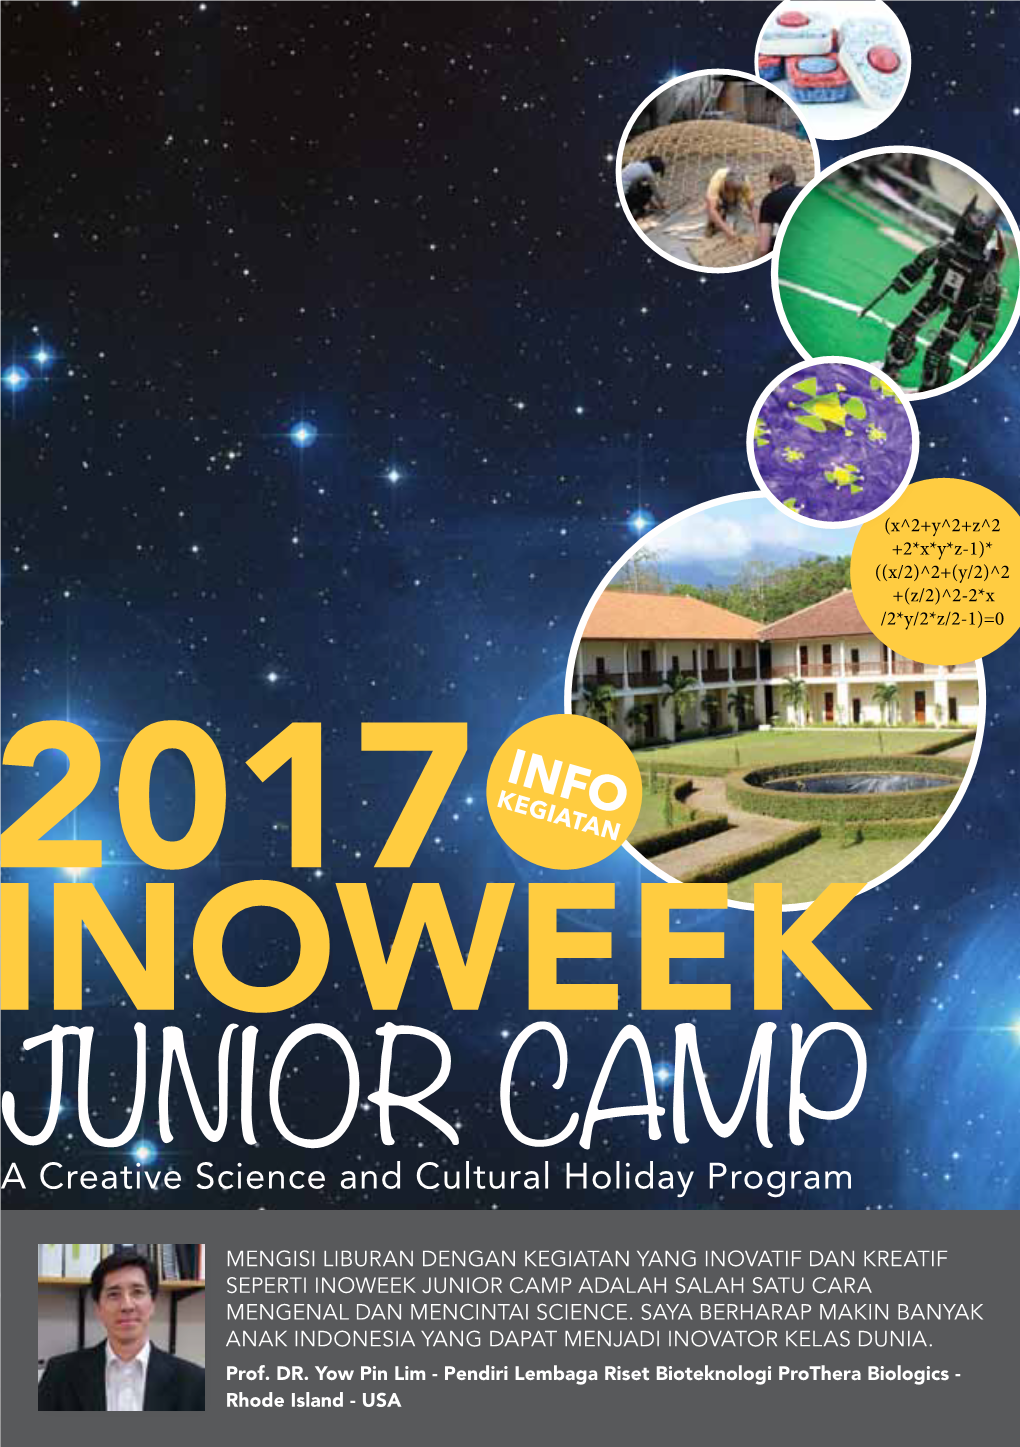 Junior Camp Adalah Salah Satu Cara Mengenal Dan Mencintai Science